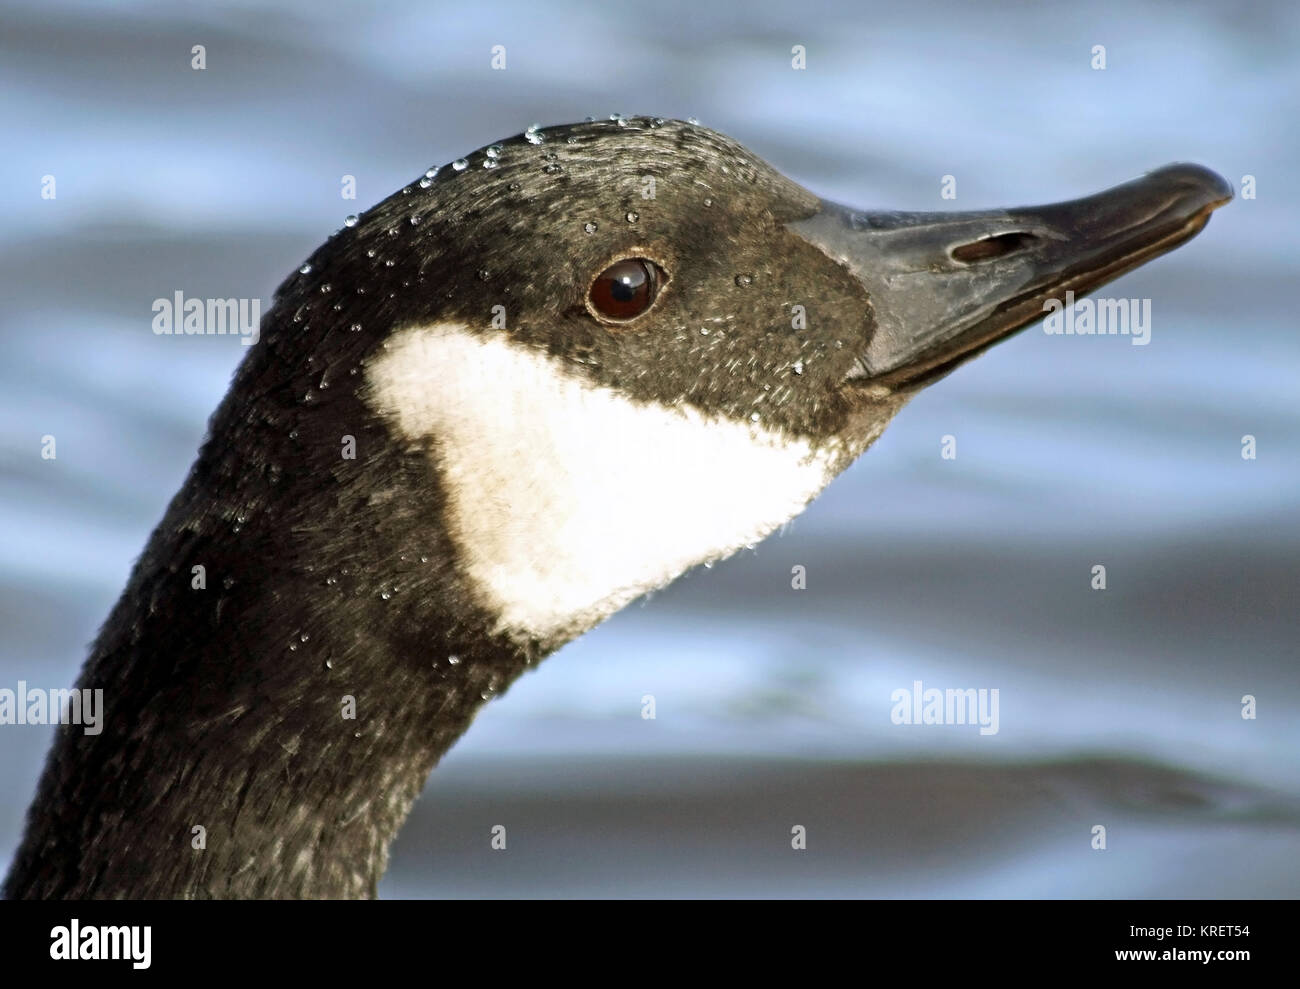 Chiusura del Canada Goose con il suo distintivo nero e marcature bianche Foto Stock